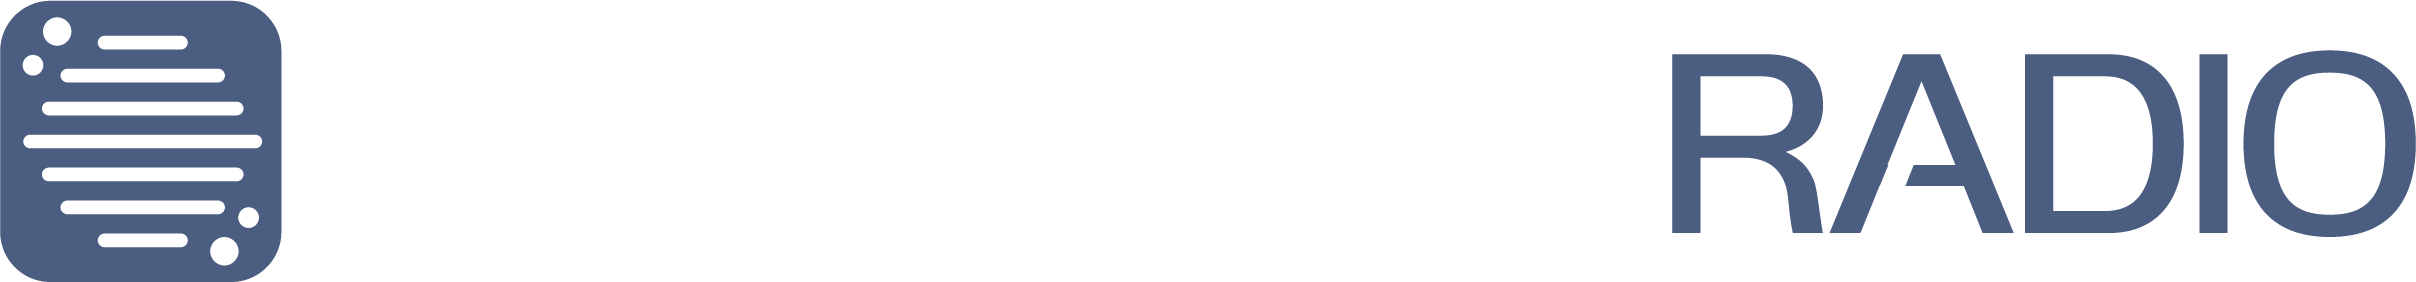 Sonoran CAD Logo